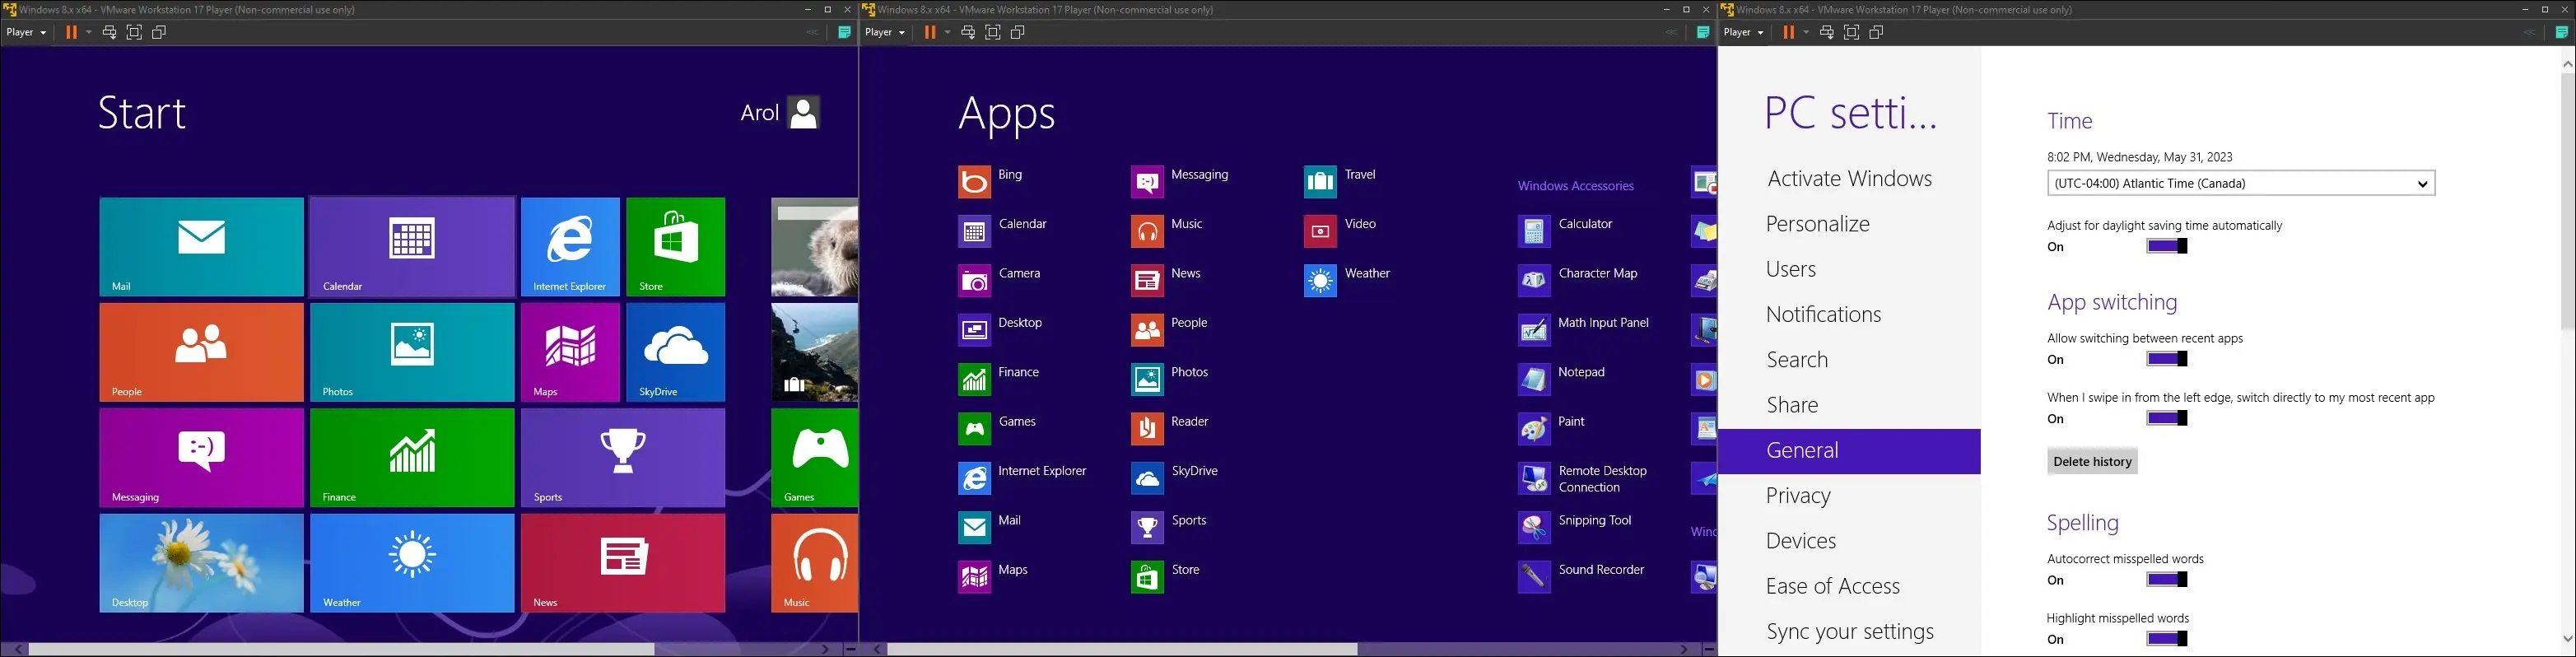 시작 메뉴, 모든 앱 메뉴 및 설정 앱을 보여주는 가상 머신의 Windows 8 이미지